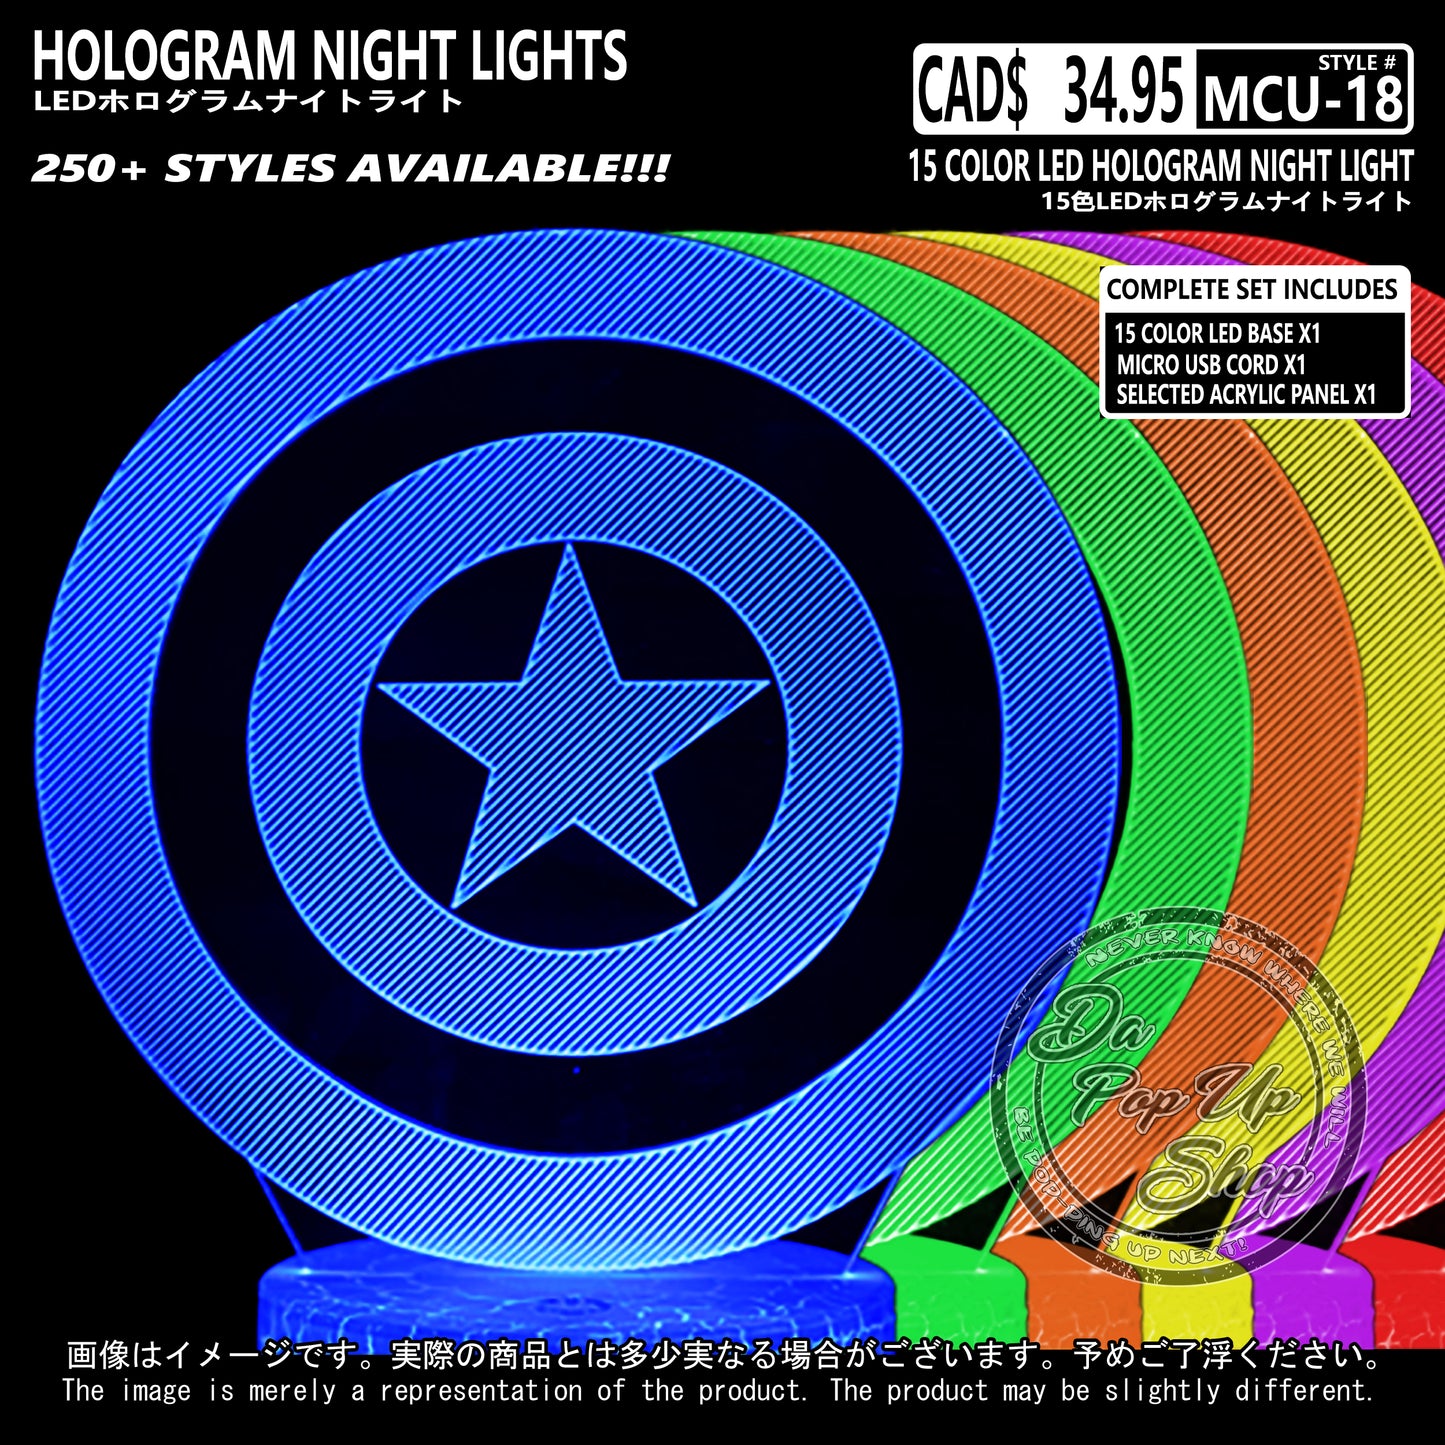 (MCU-18) MCU Marvel Cinematic Universal Hologram LED Night Light